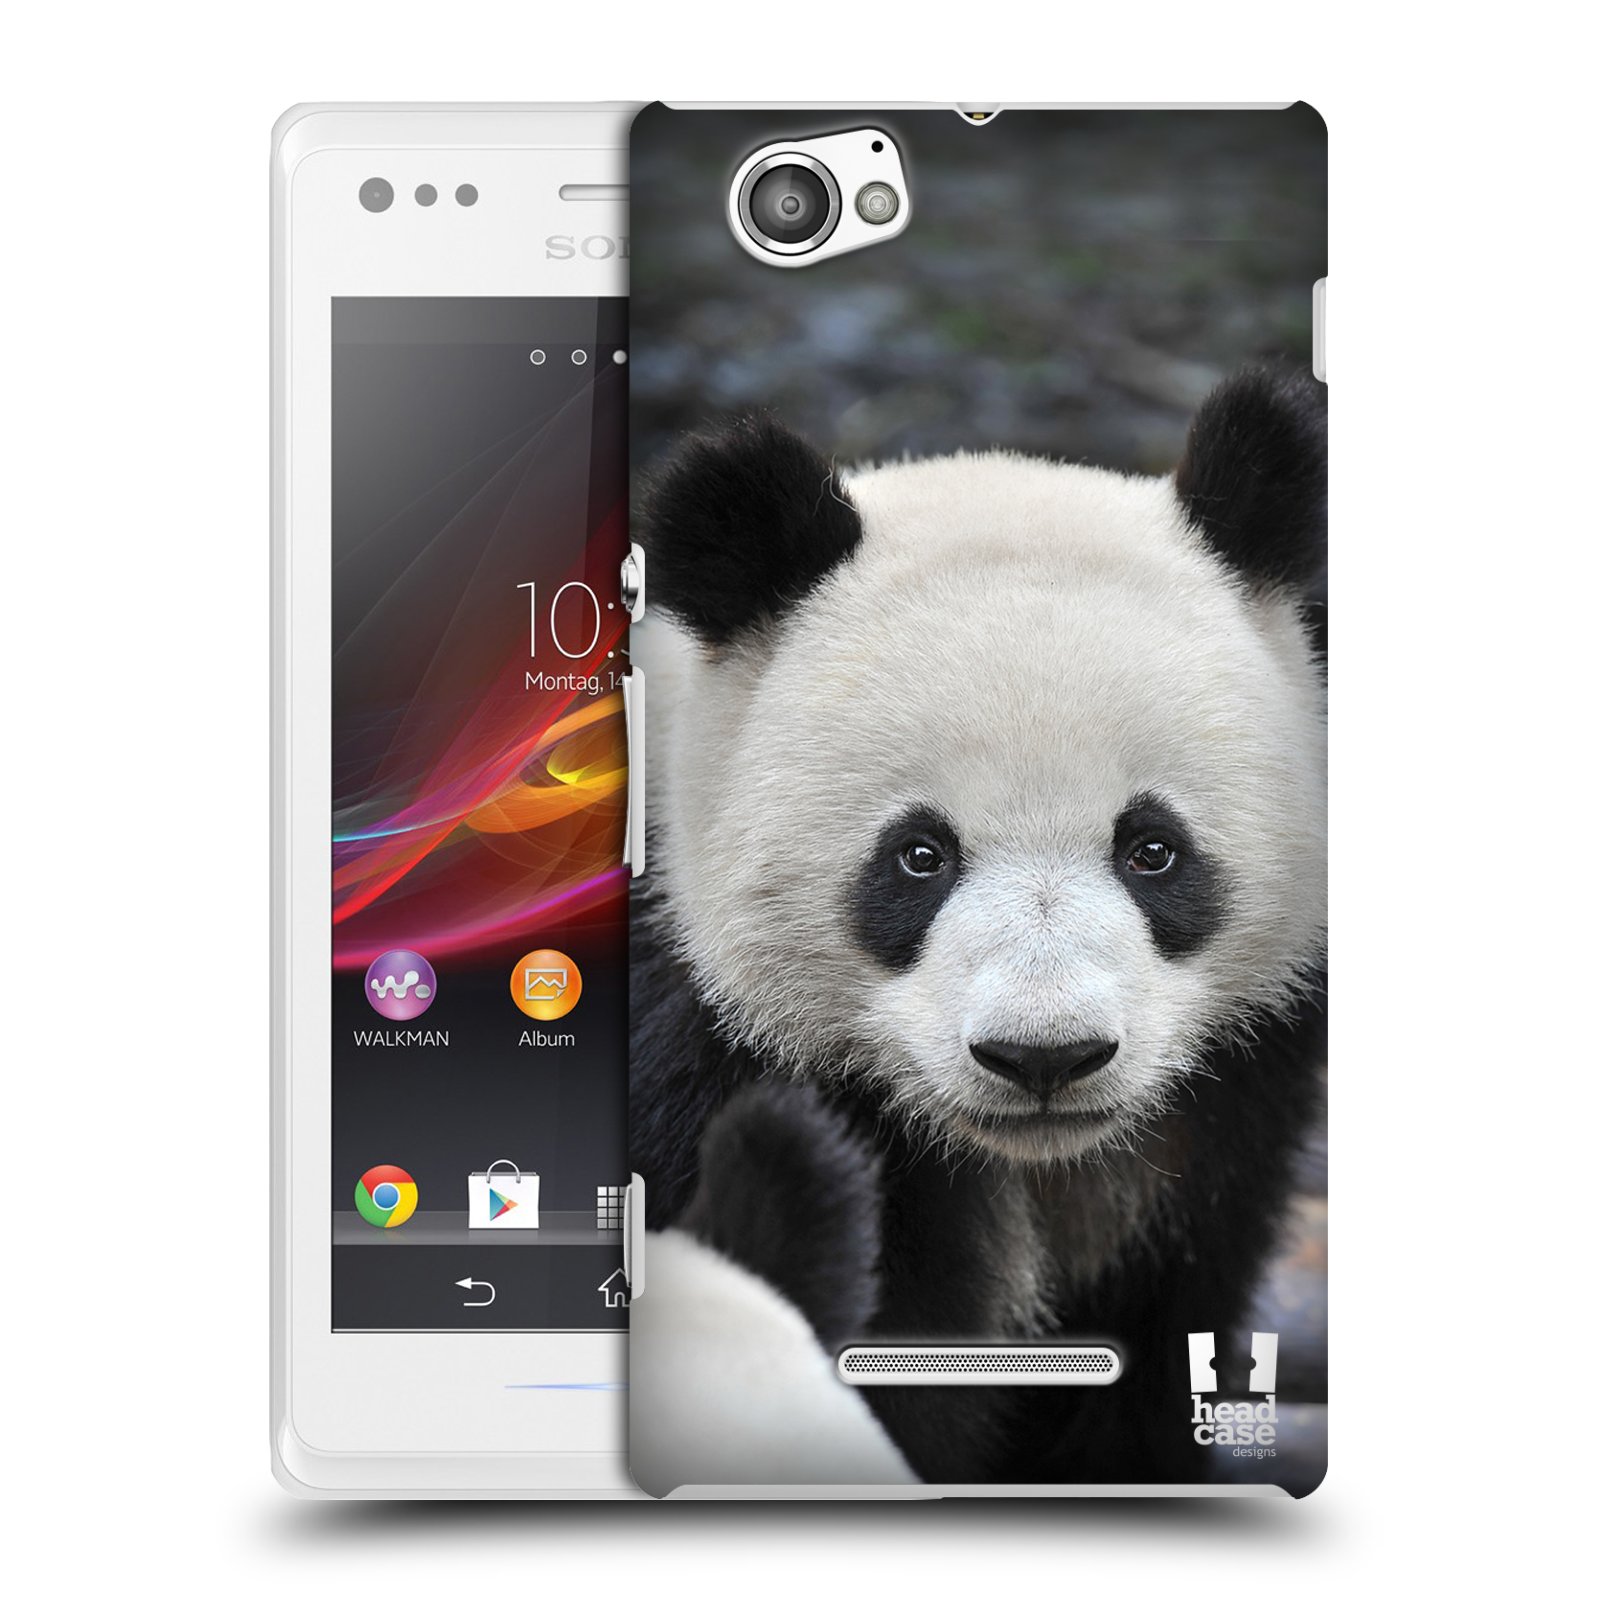 HEAD CASE plastový obal na mobil Sony Xperia M vzor Divočina, Divoký život a zvířata foto MEDVĚD PANDA